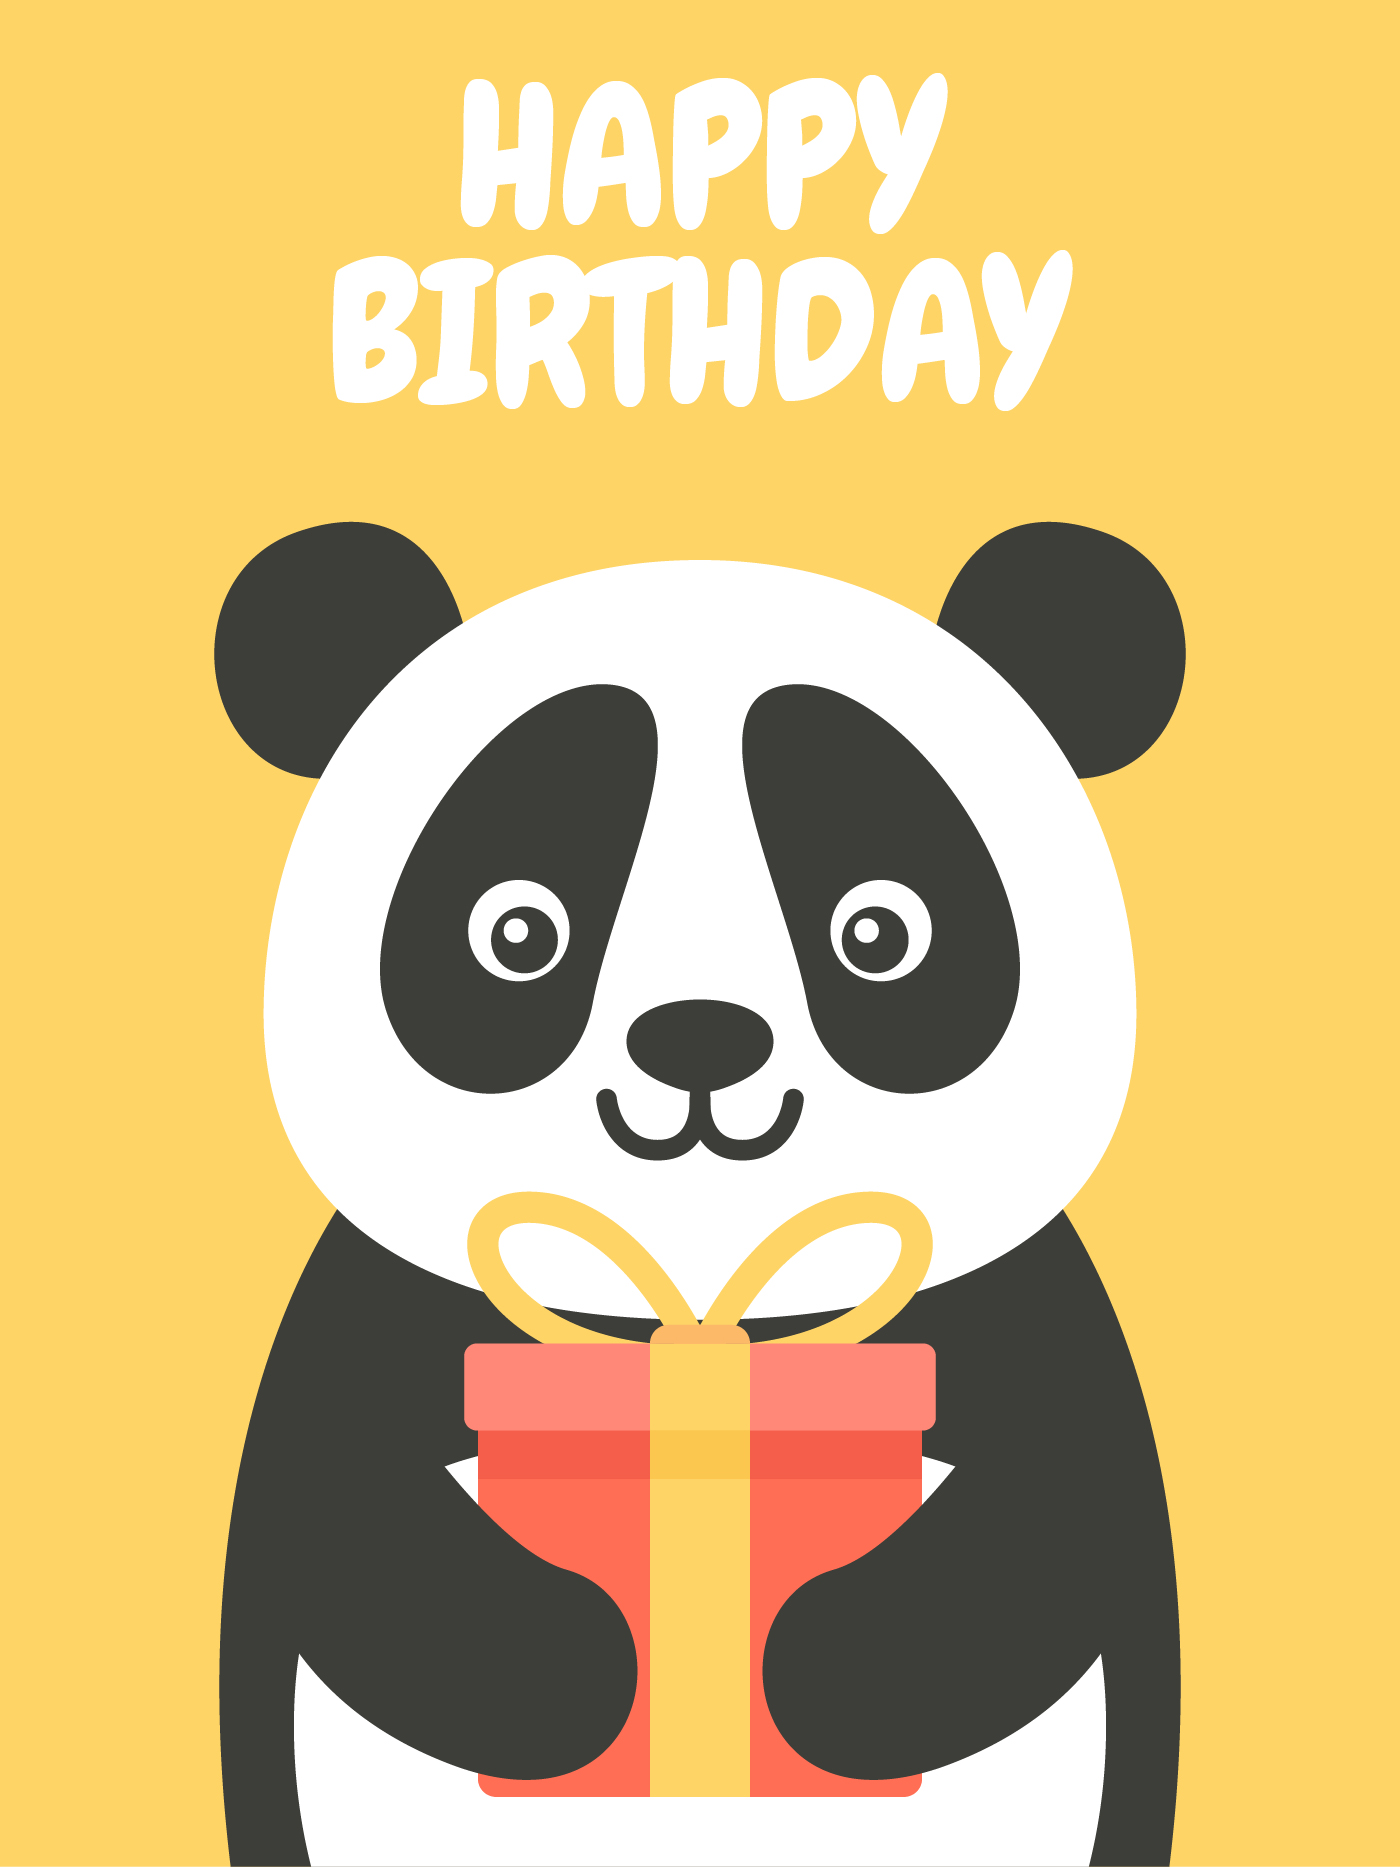 Happy Birthday Panda Images